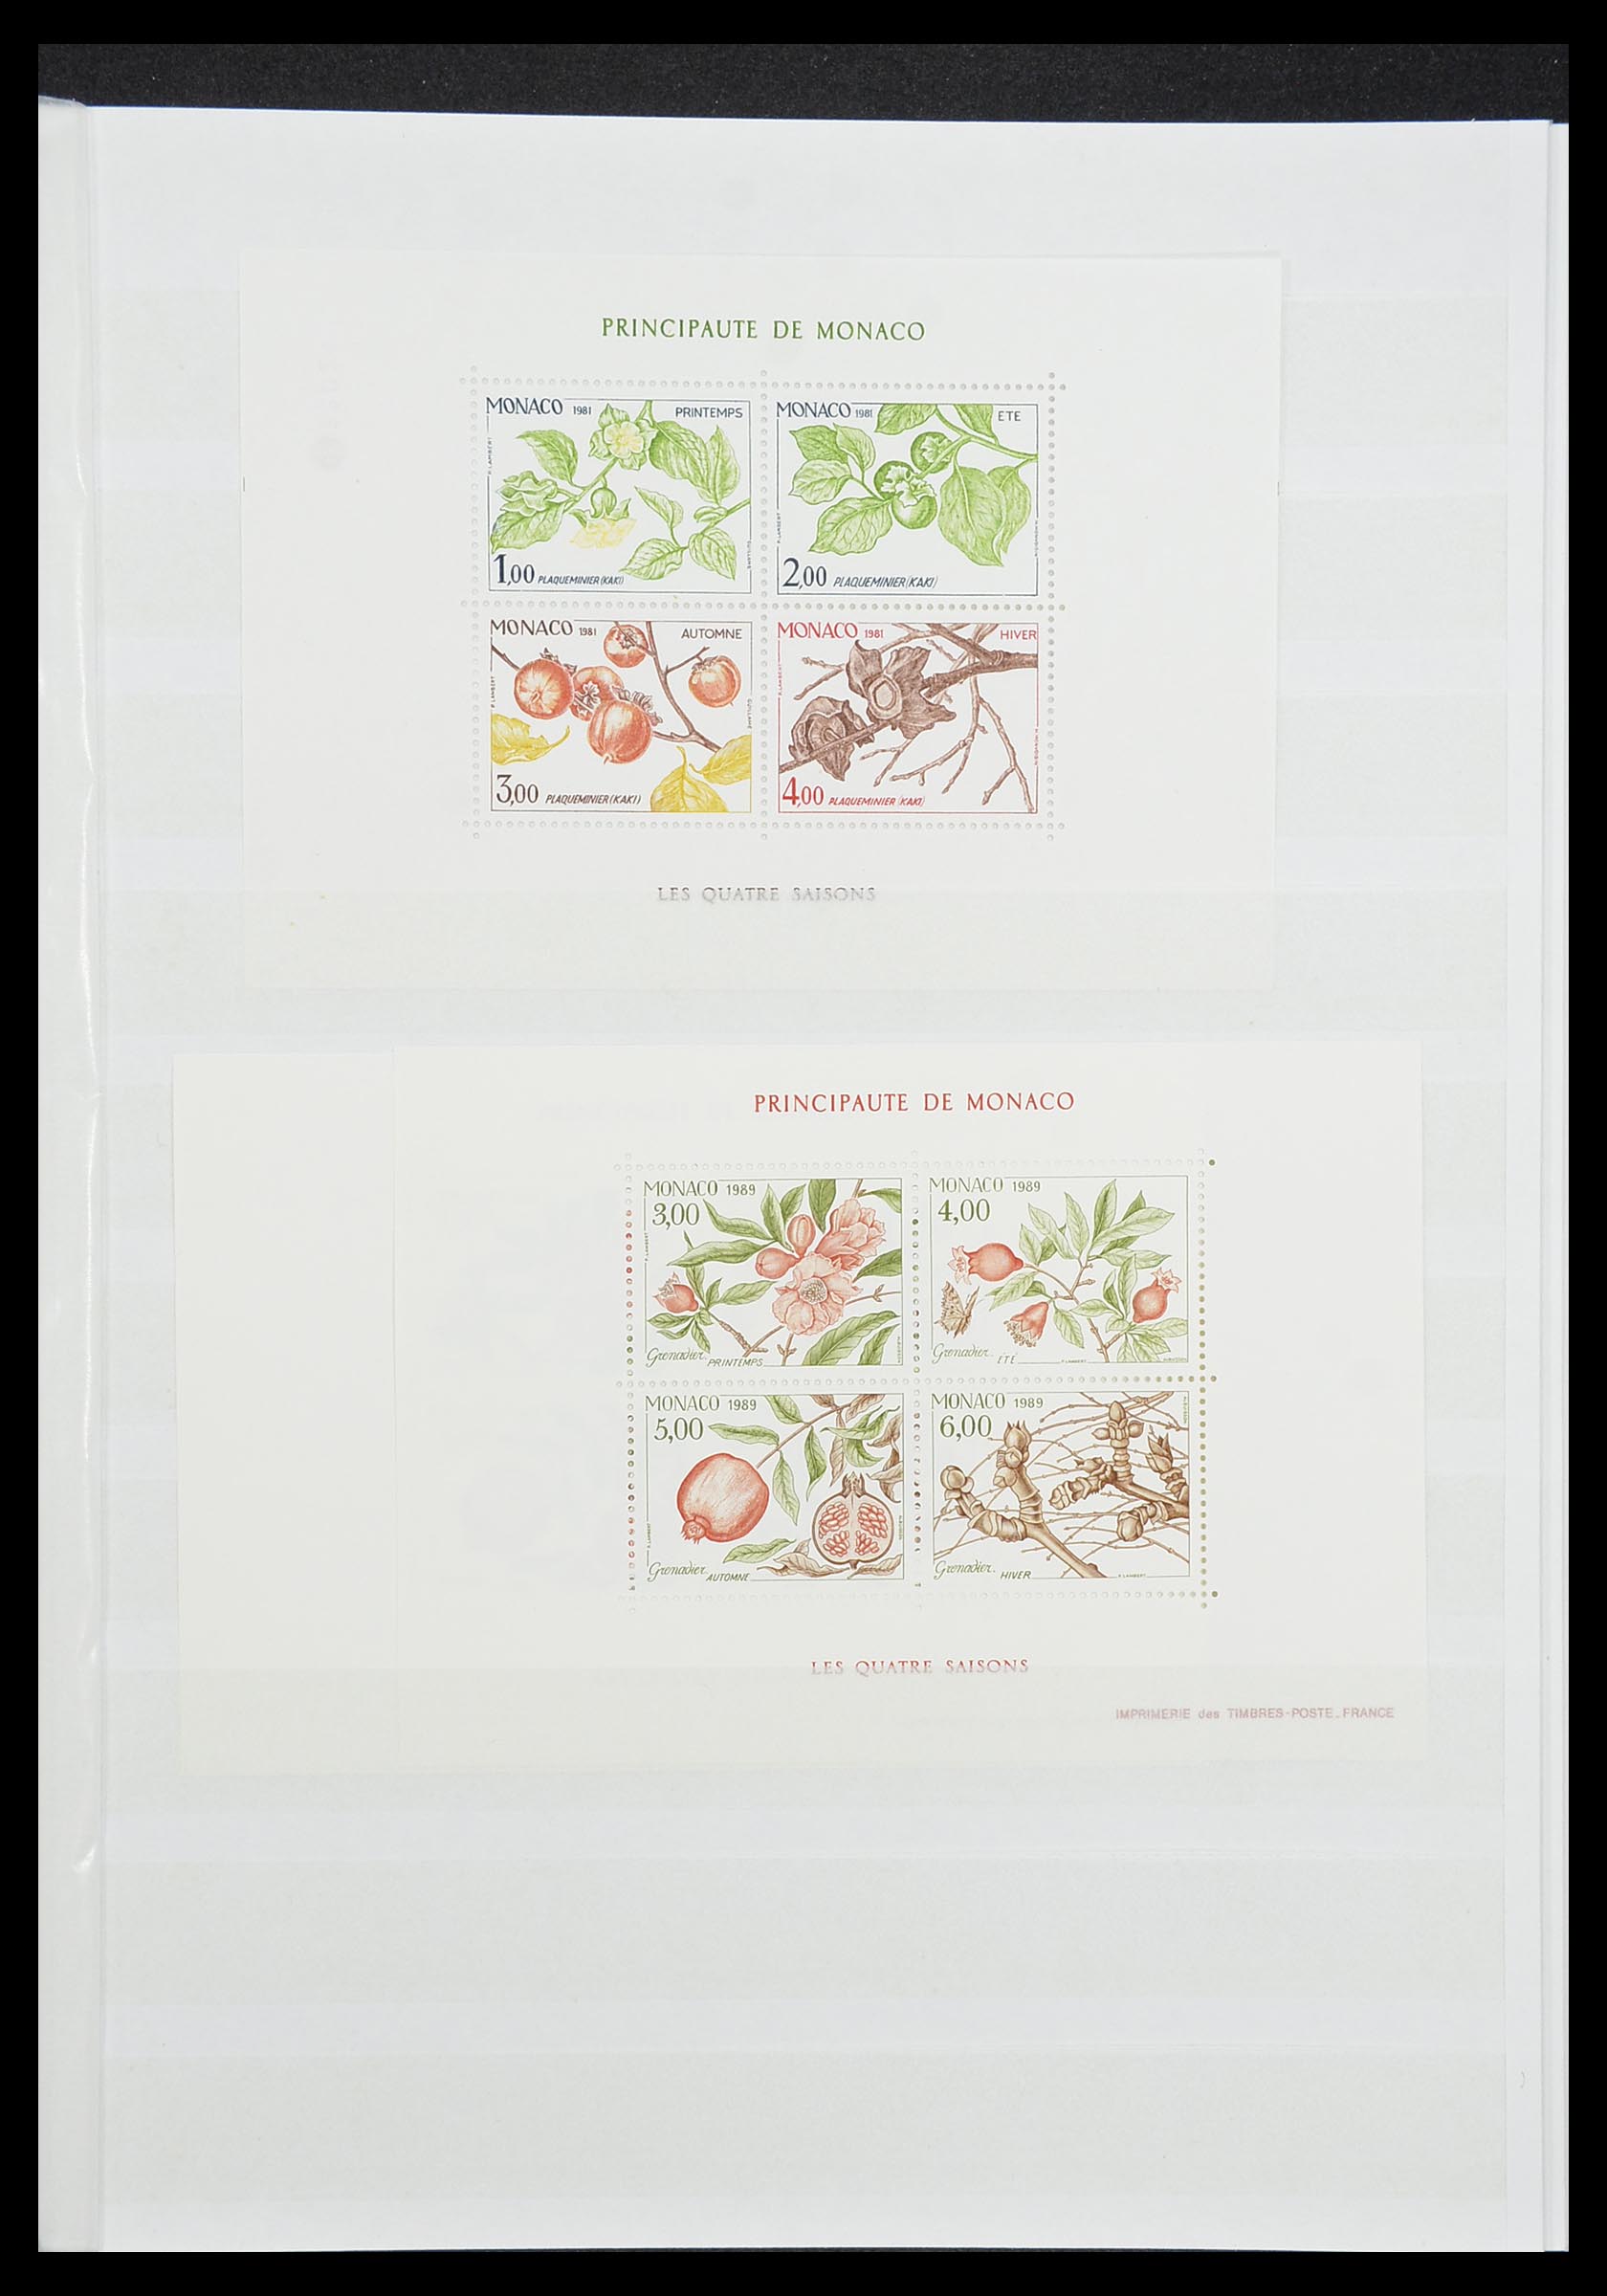 33833 022 - Stamp collection 33833 Monaco souvenir sheets 1979-2015.